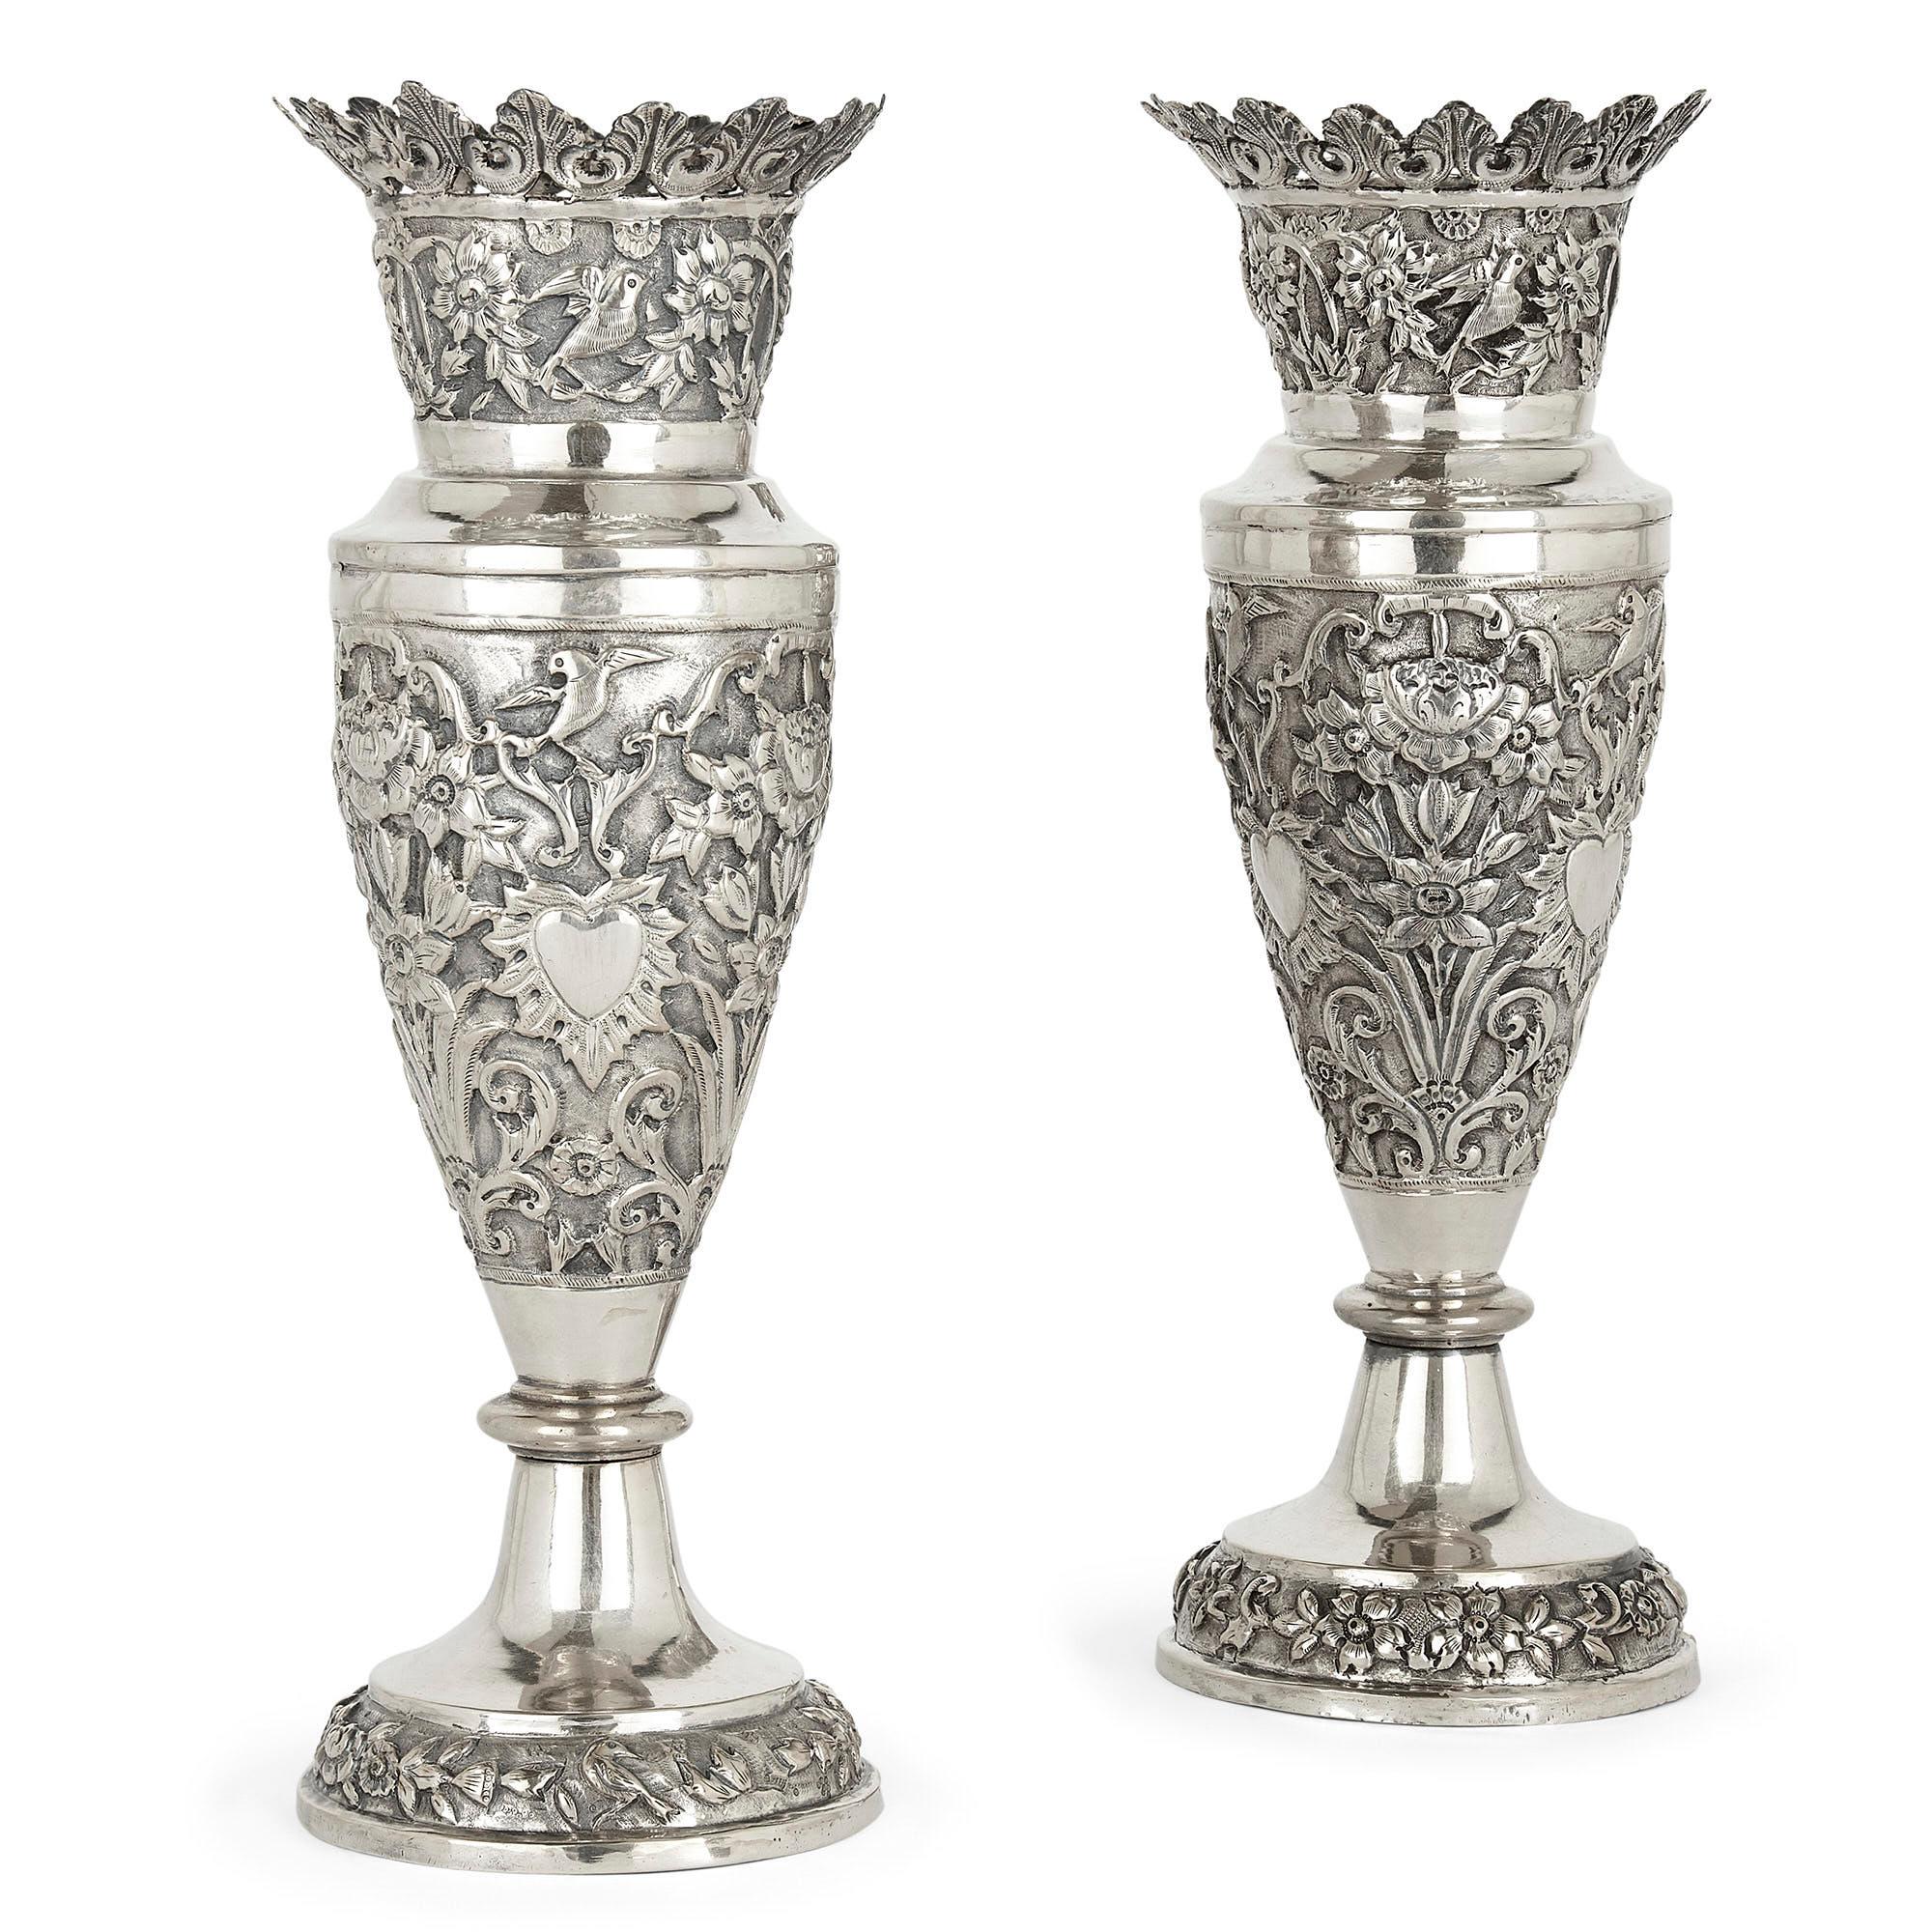 Paire de vases floraux en argent produits en Perse Qajar
Persan, fin du 19e siècle
Mesures : Hauteur 27 cm, diamètre 9,5 cm

Ces vases en argent persan sont ornés de motifs repoussés et ciselés. Chaque vase présente un pied circulaire orné de